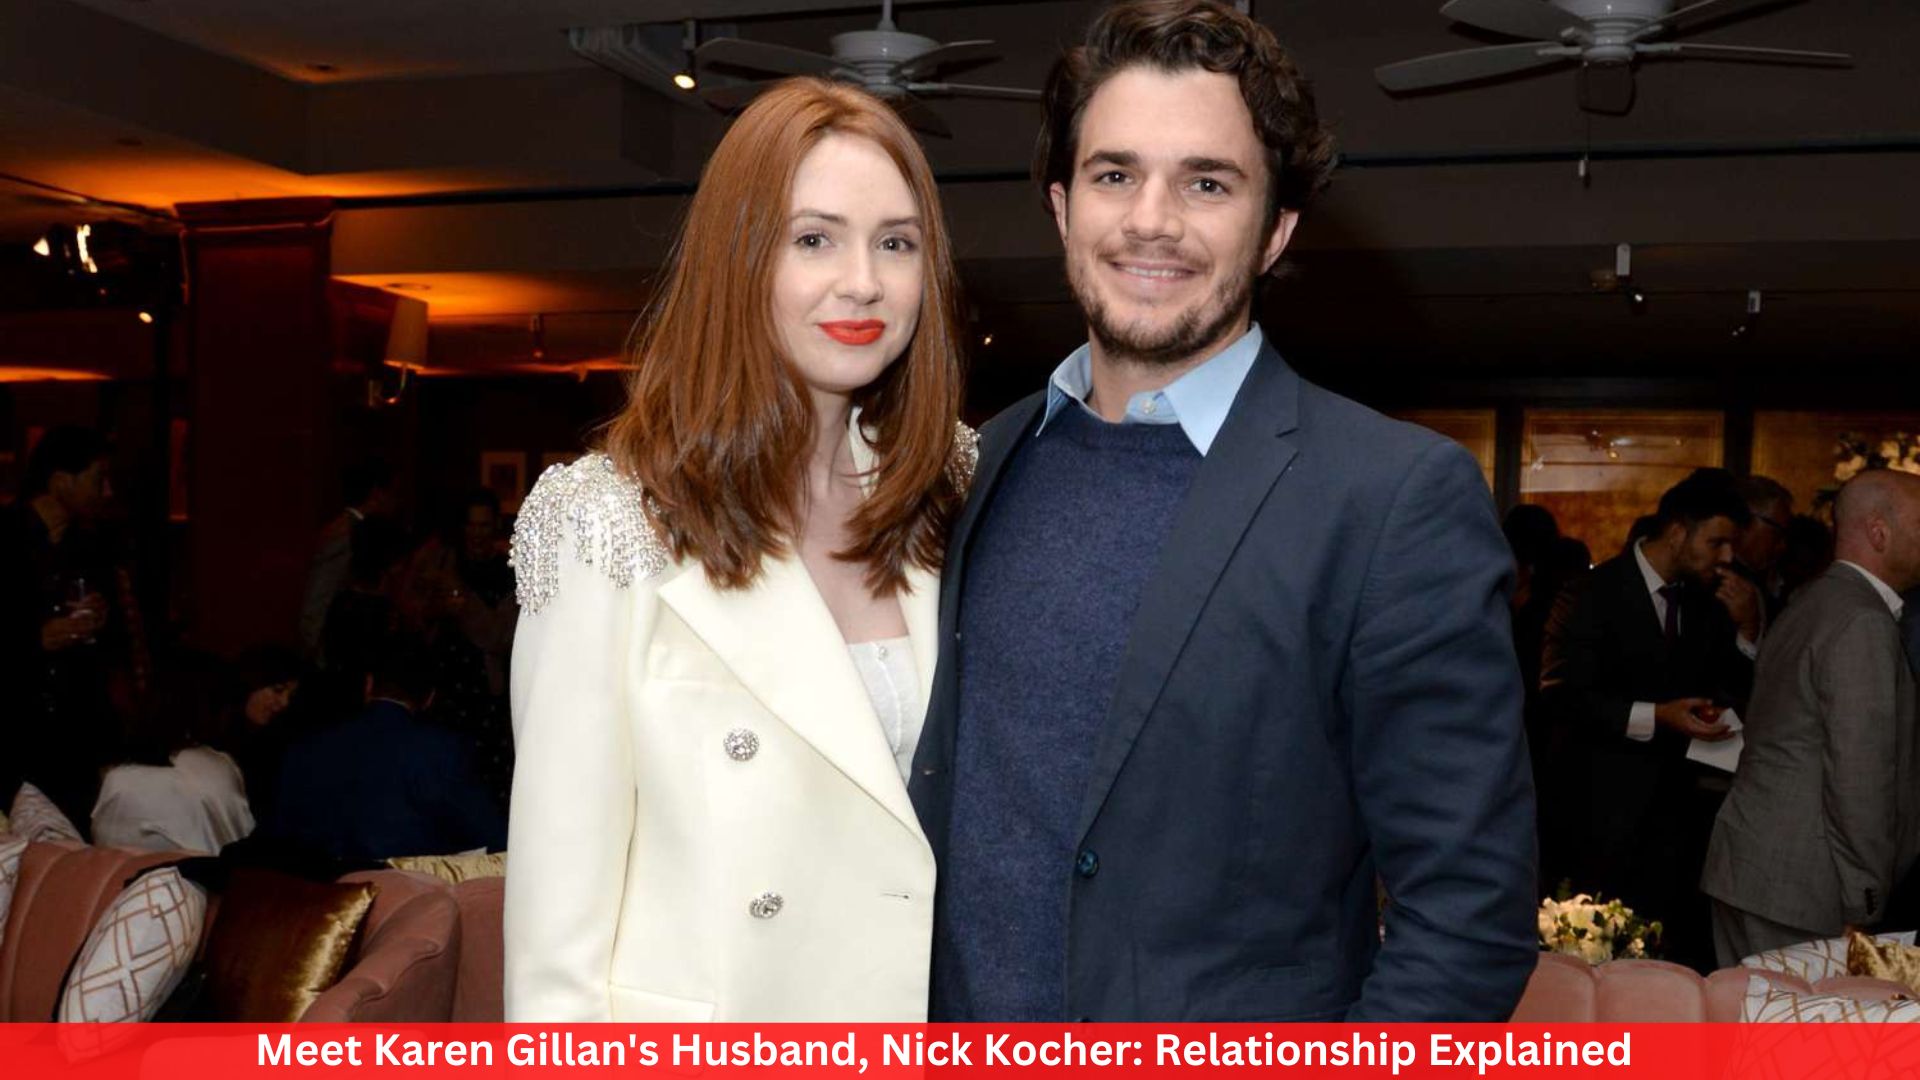 Meet Karen Gillan's Husband, Nick Kocher: Relationship Explained